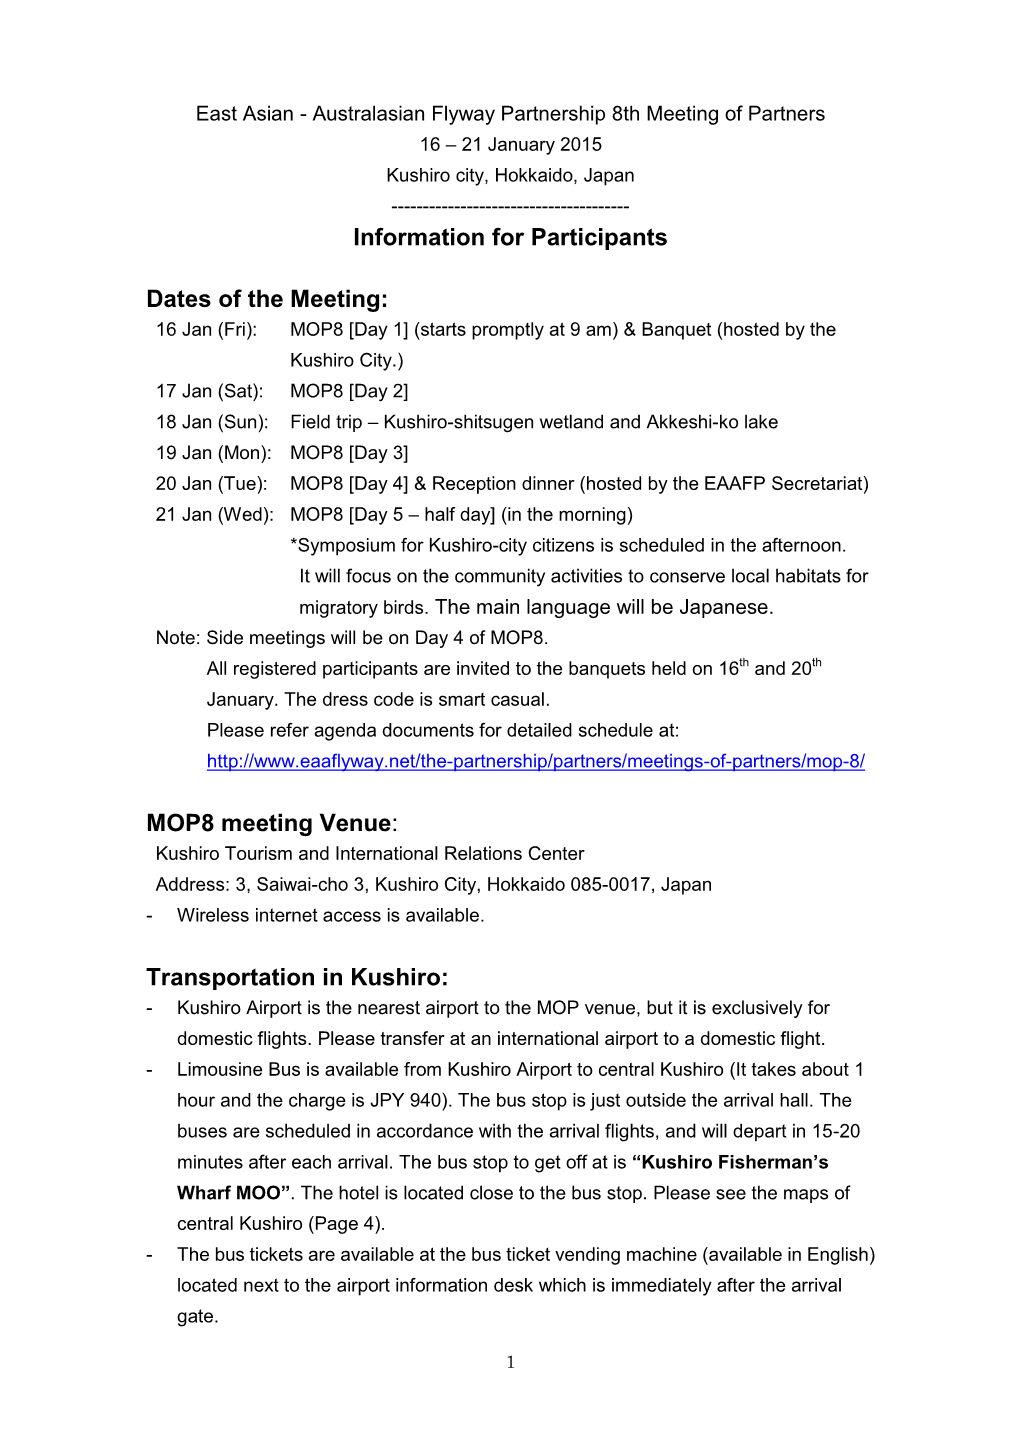 Information for Participants EAAFP MOP8 Version 2